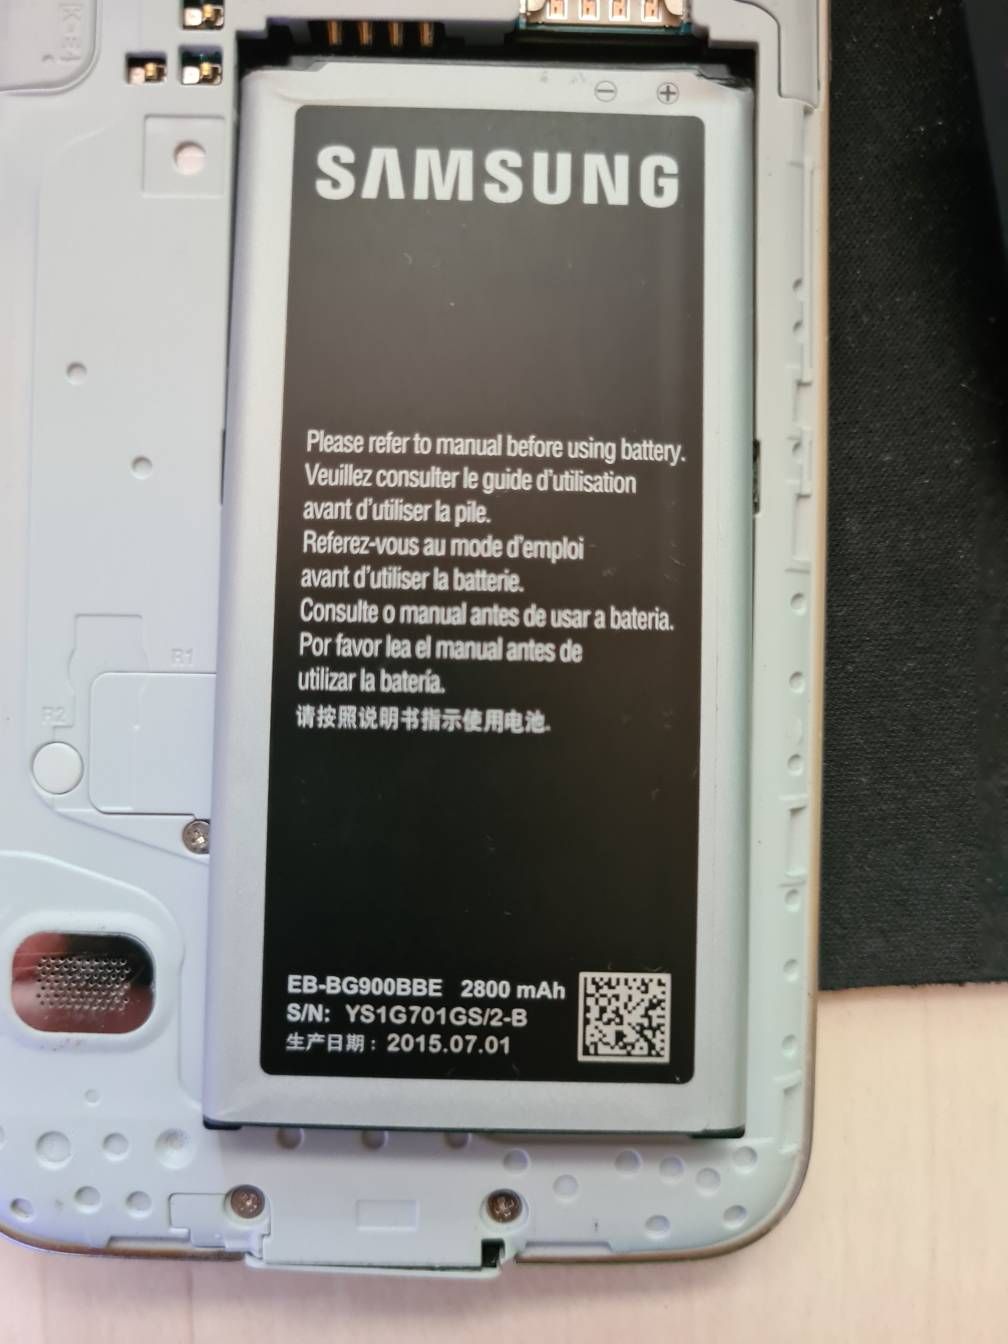 Samsung Galaxy S7 Edge geht nicht mehr an - Samsung Community